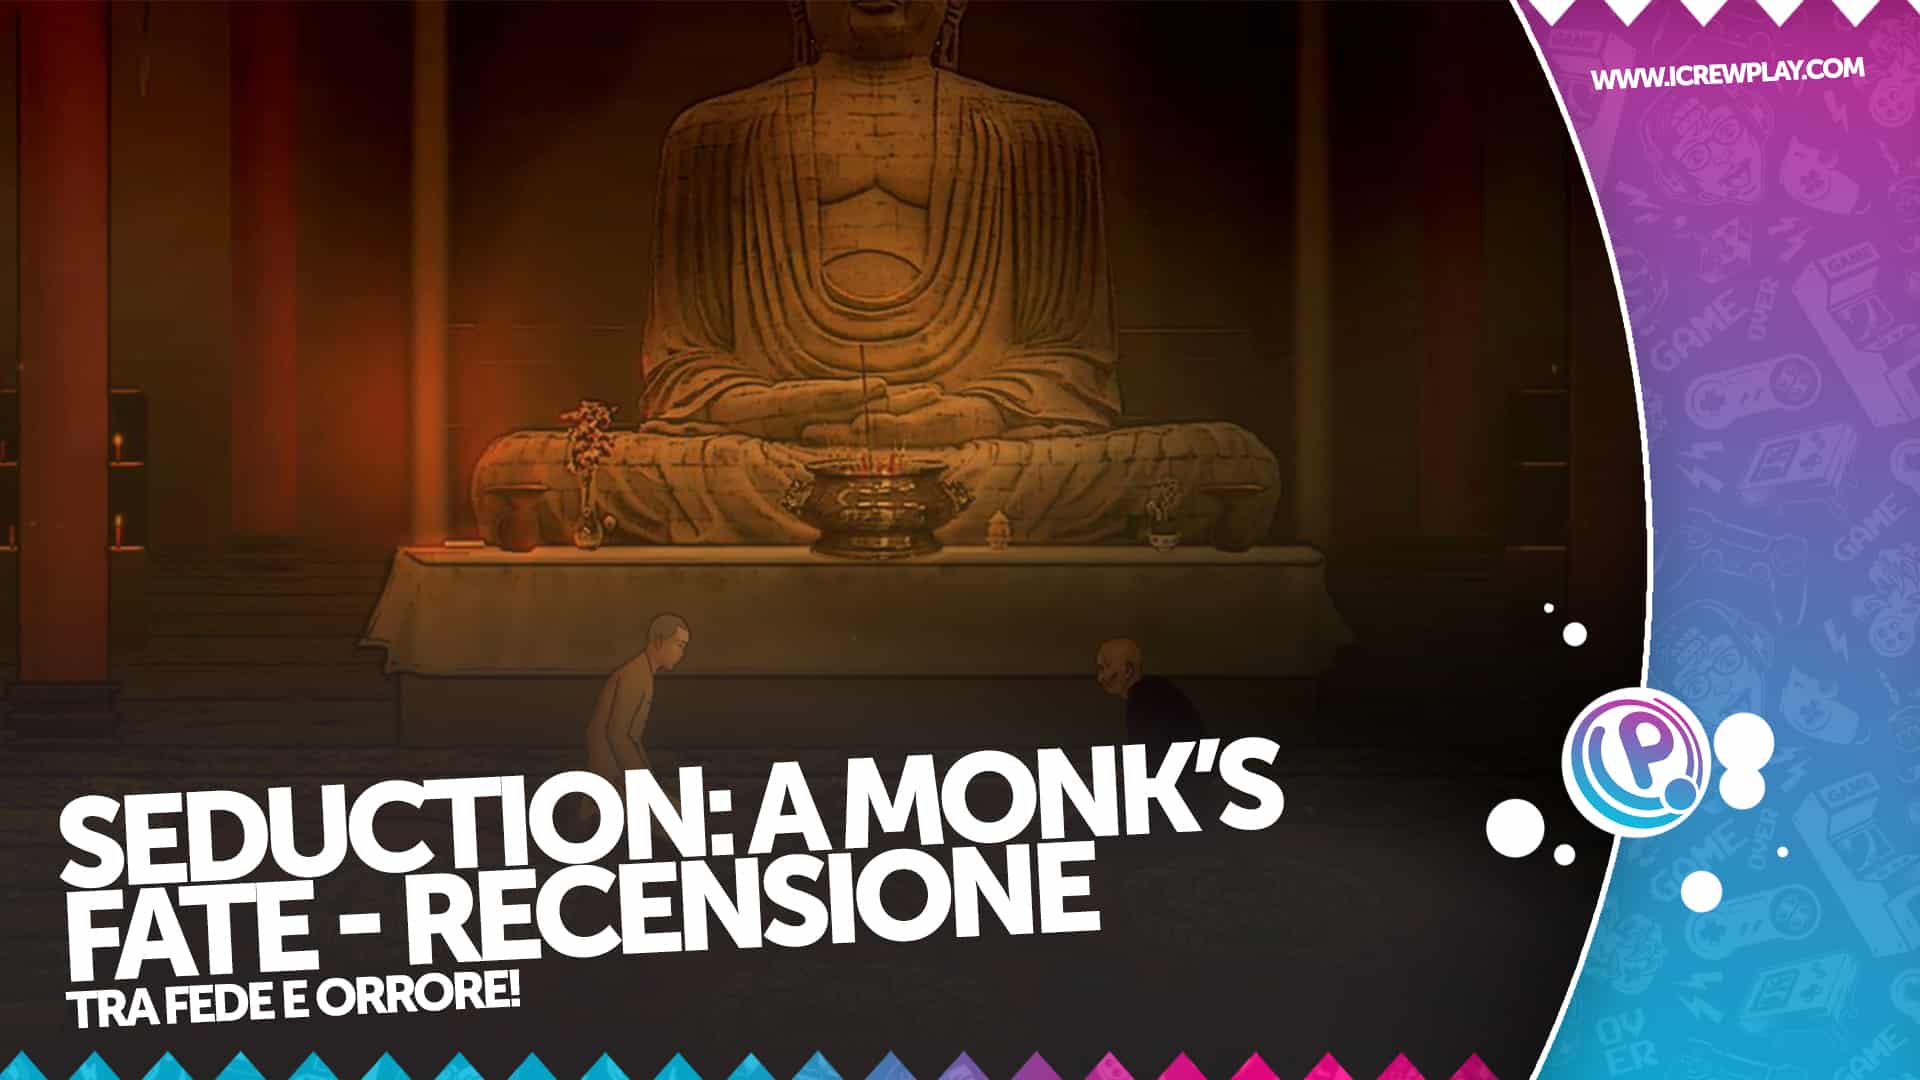 Seduction: A Monk's Fate - Recensione per Nintendo Switch 2